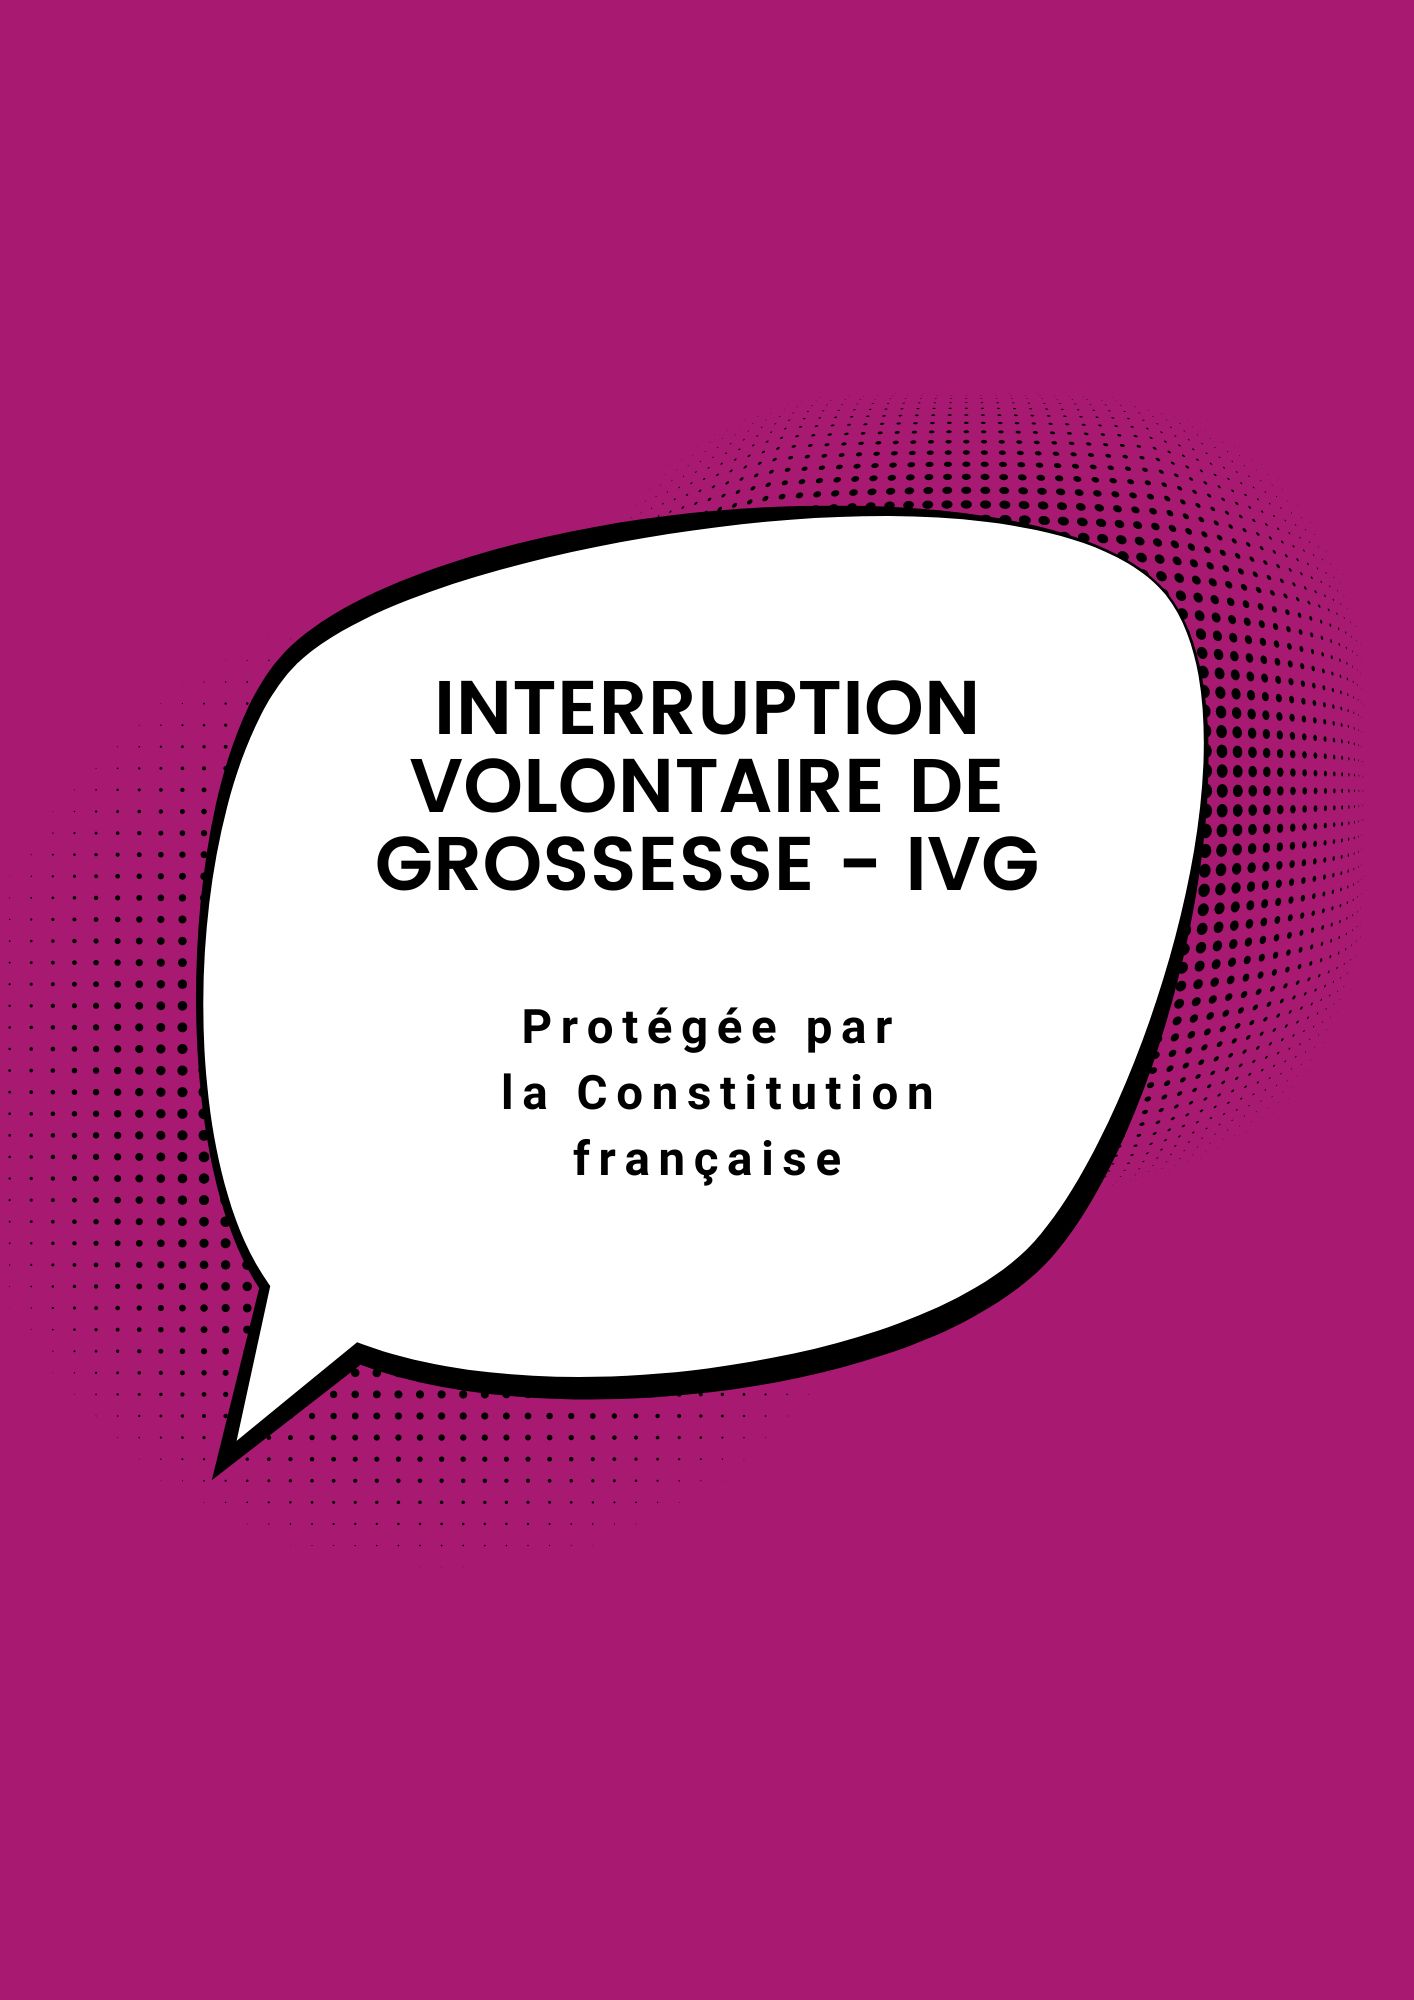 L'IVG en France devient un Droit fondamental inscrit dans la Constitution